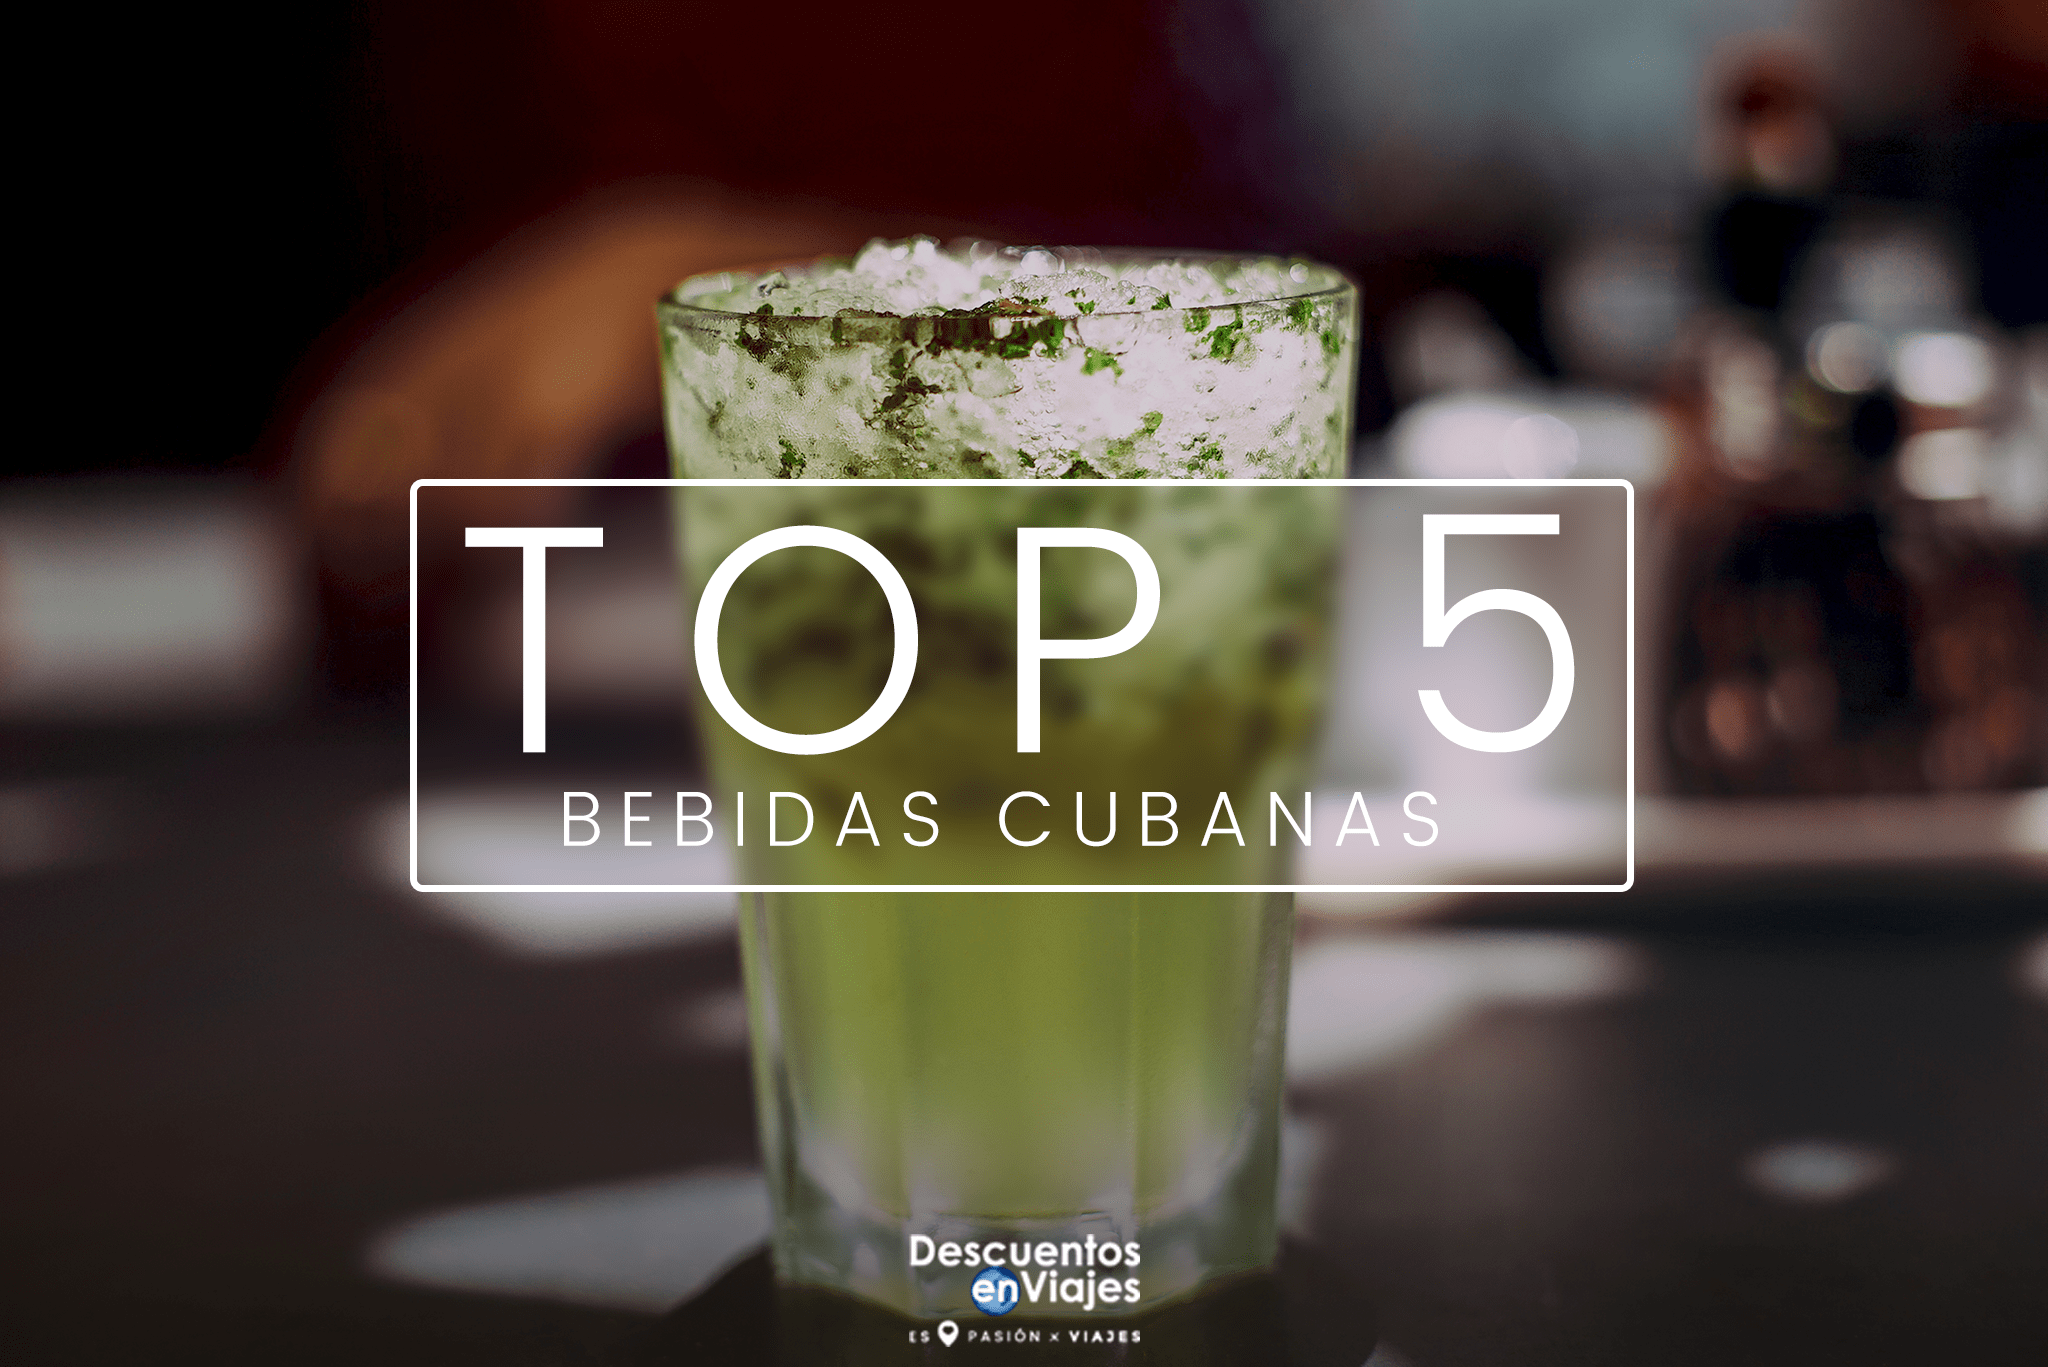 TOP 5 BEBIDAS CUBANAS